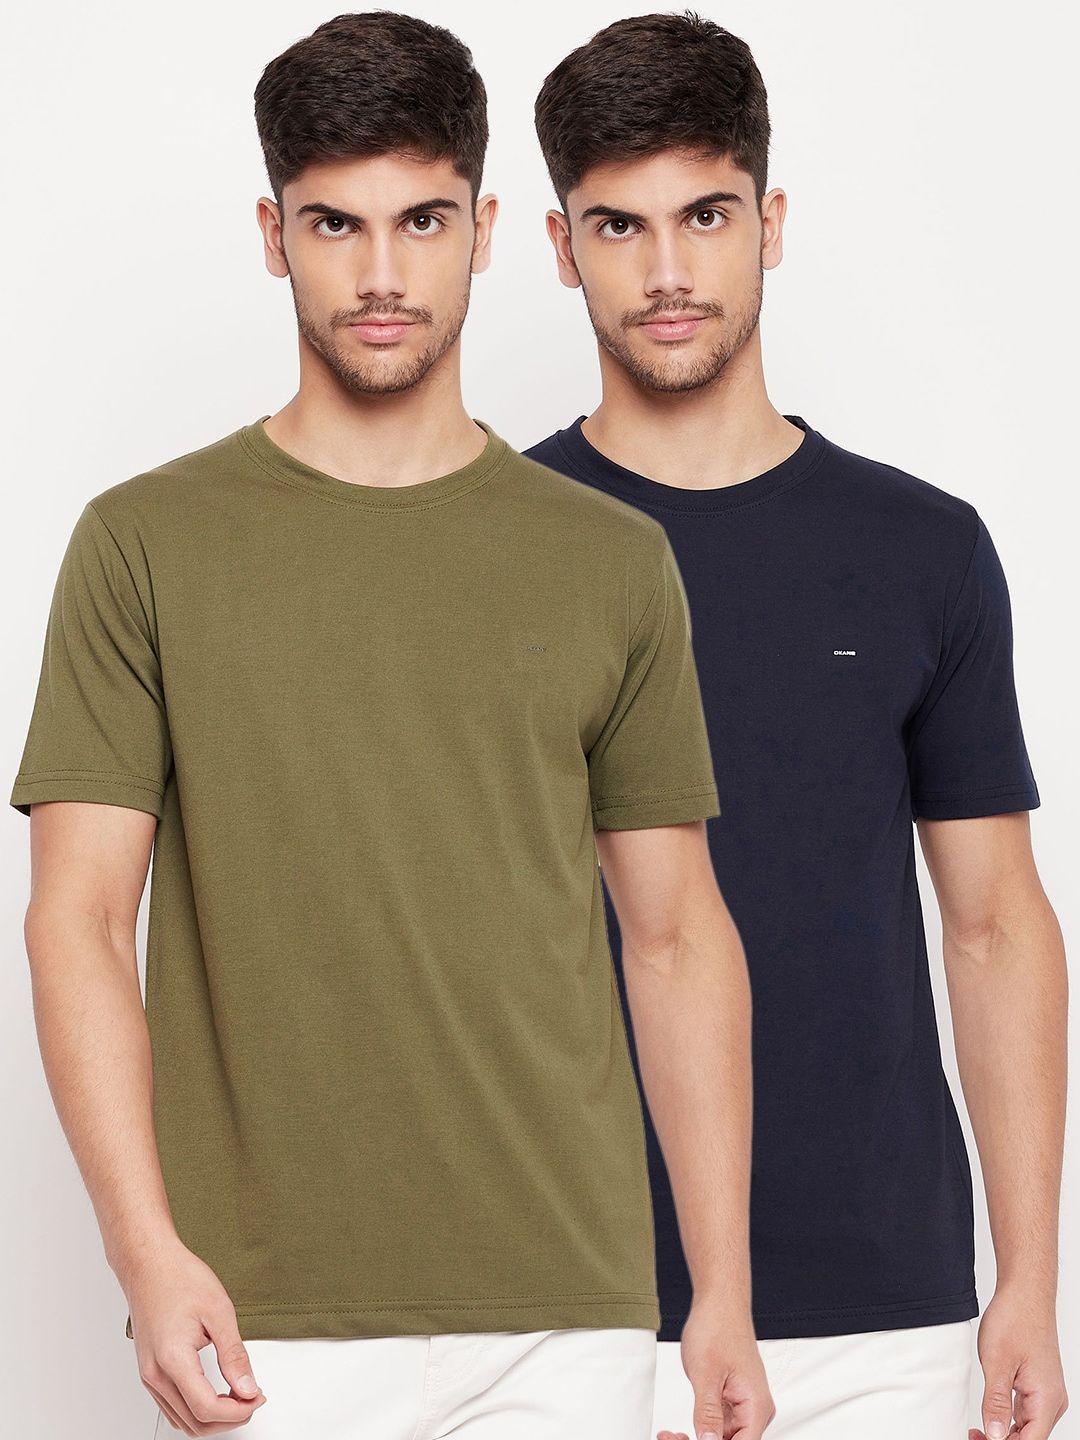 okane-men-olive-green-2-extended-sleeves-raw-edge-t-shirt